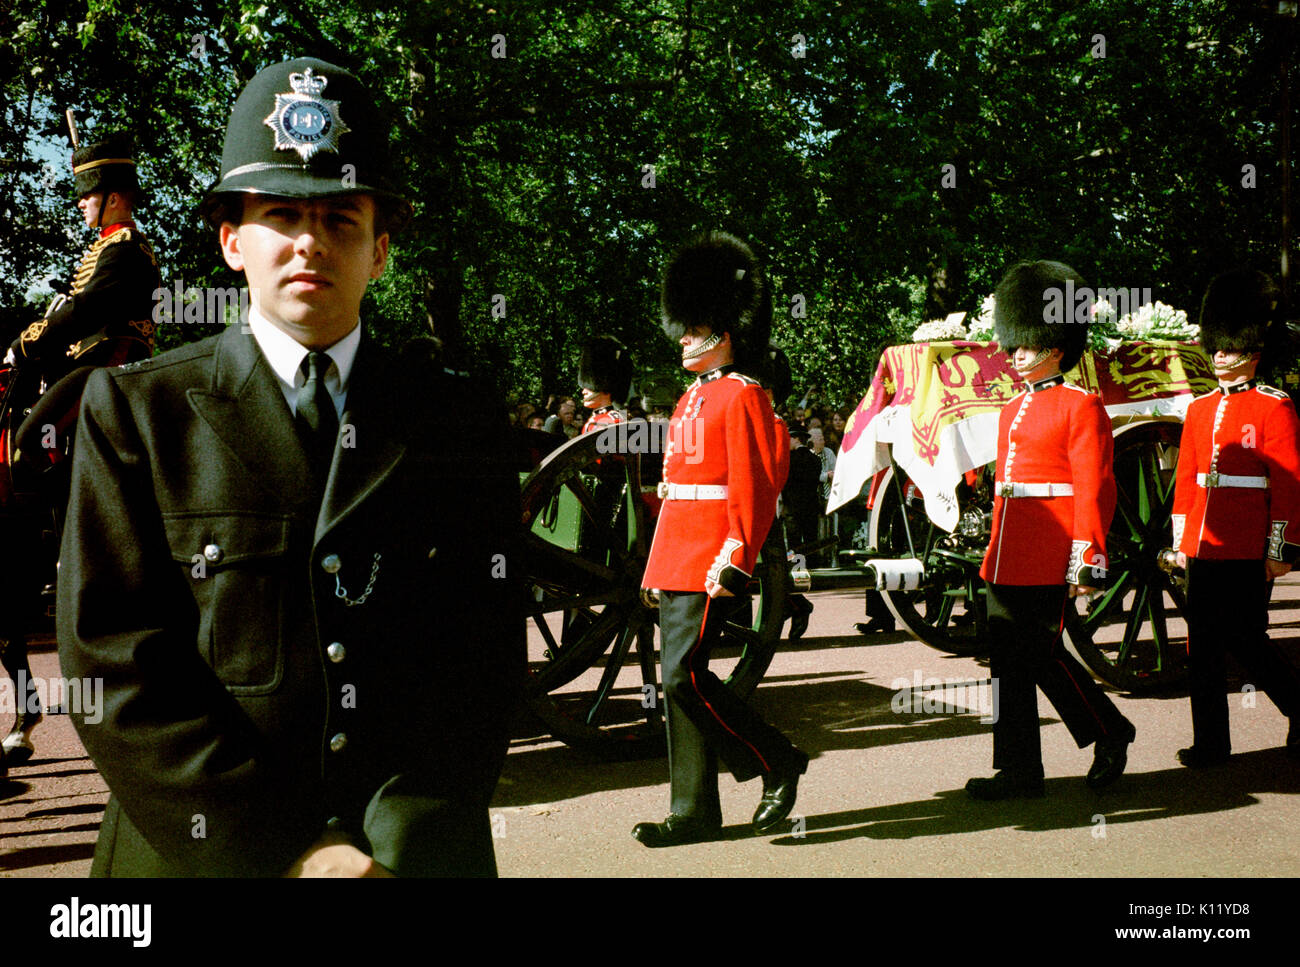 Londra, UK, 6 settembre, 1997. Funerali di Diana, principessa di Galles. La principessa Diana la bara drappeggiati con il royal standard è mostrato di essere trasportati su un carrello pistola accompagnato da otto membri delle guardie gallesi come il corteo funebre rende il modo lungo Horse Guards Road. Foto Stock